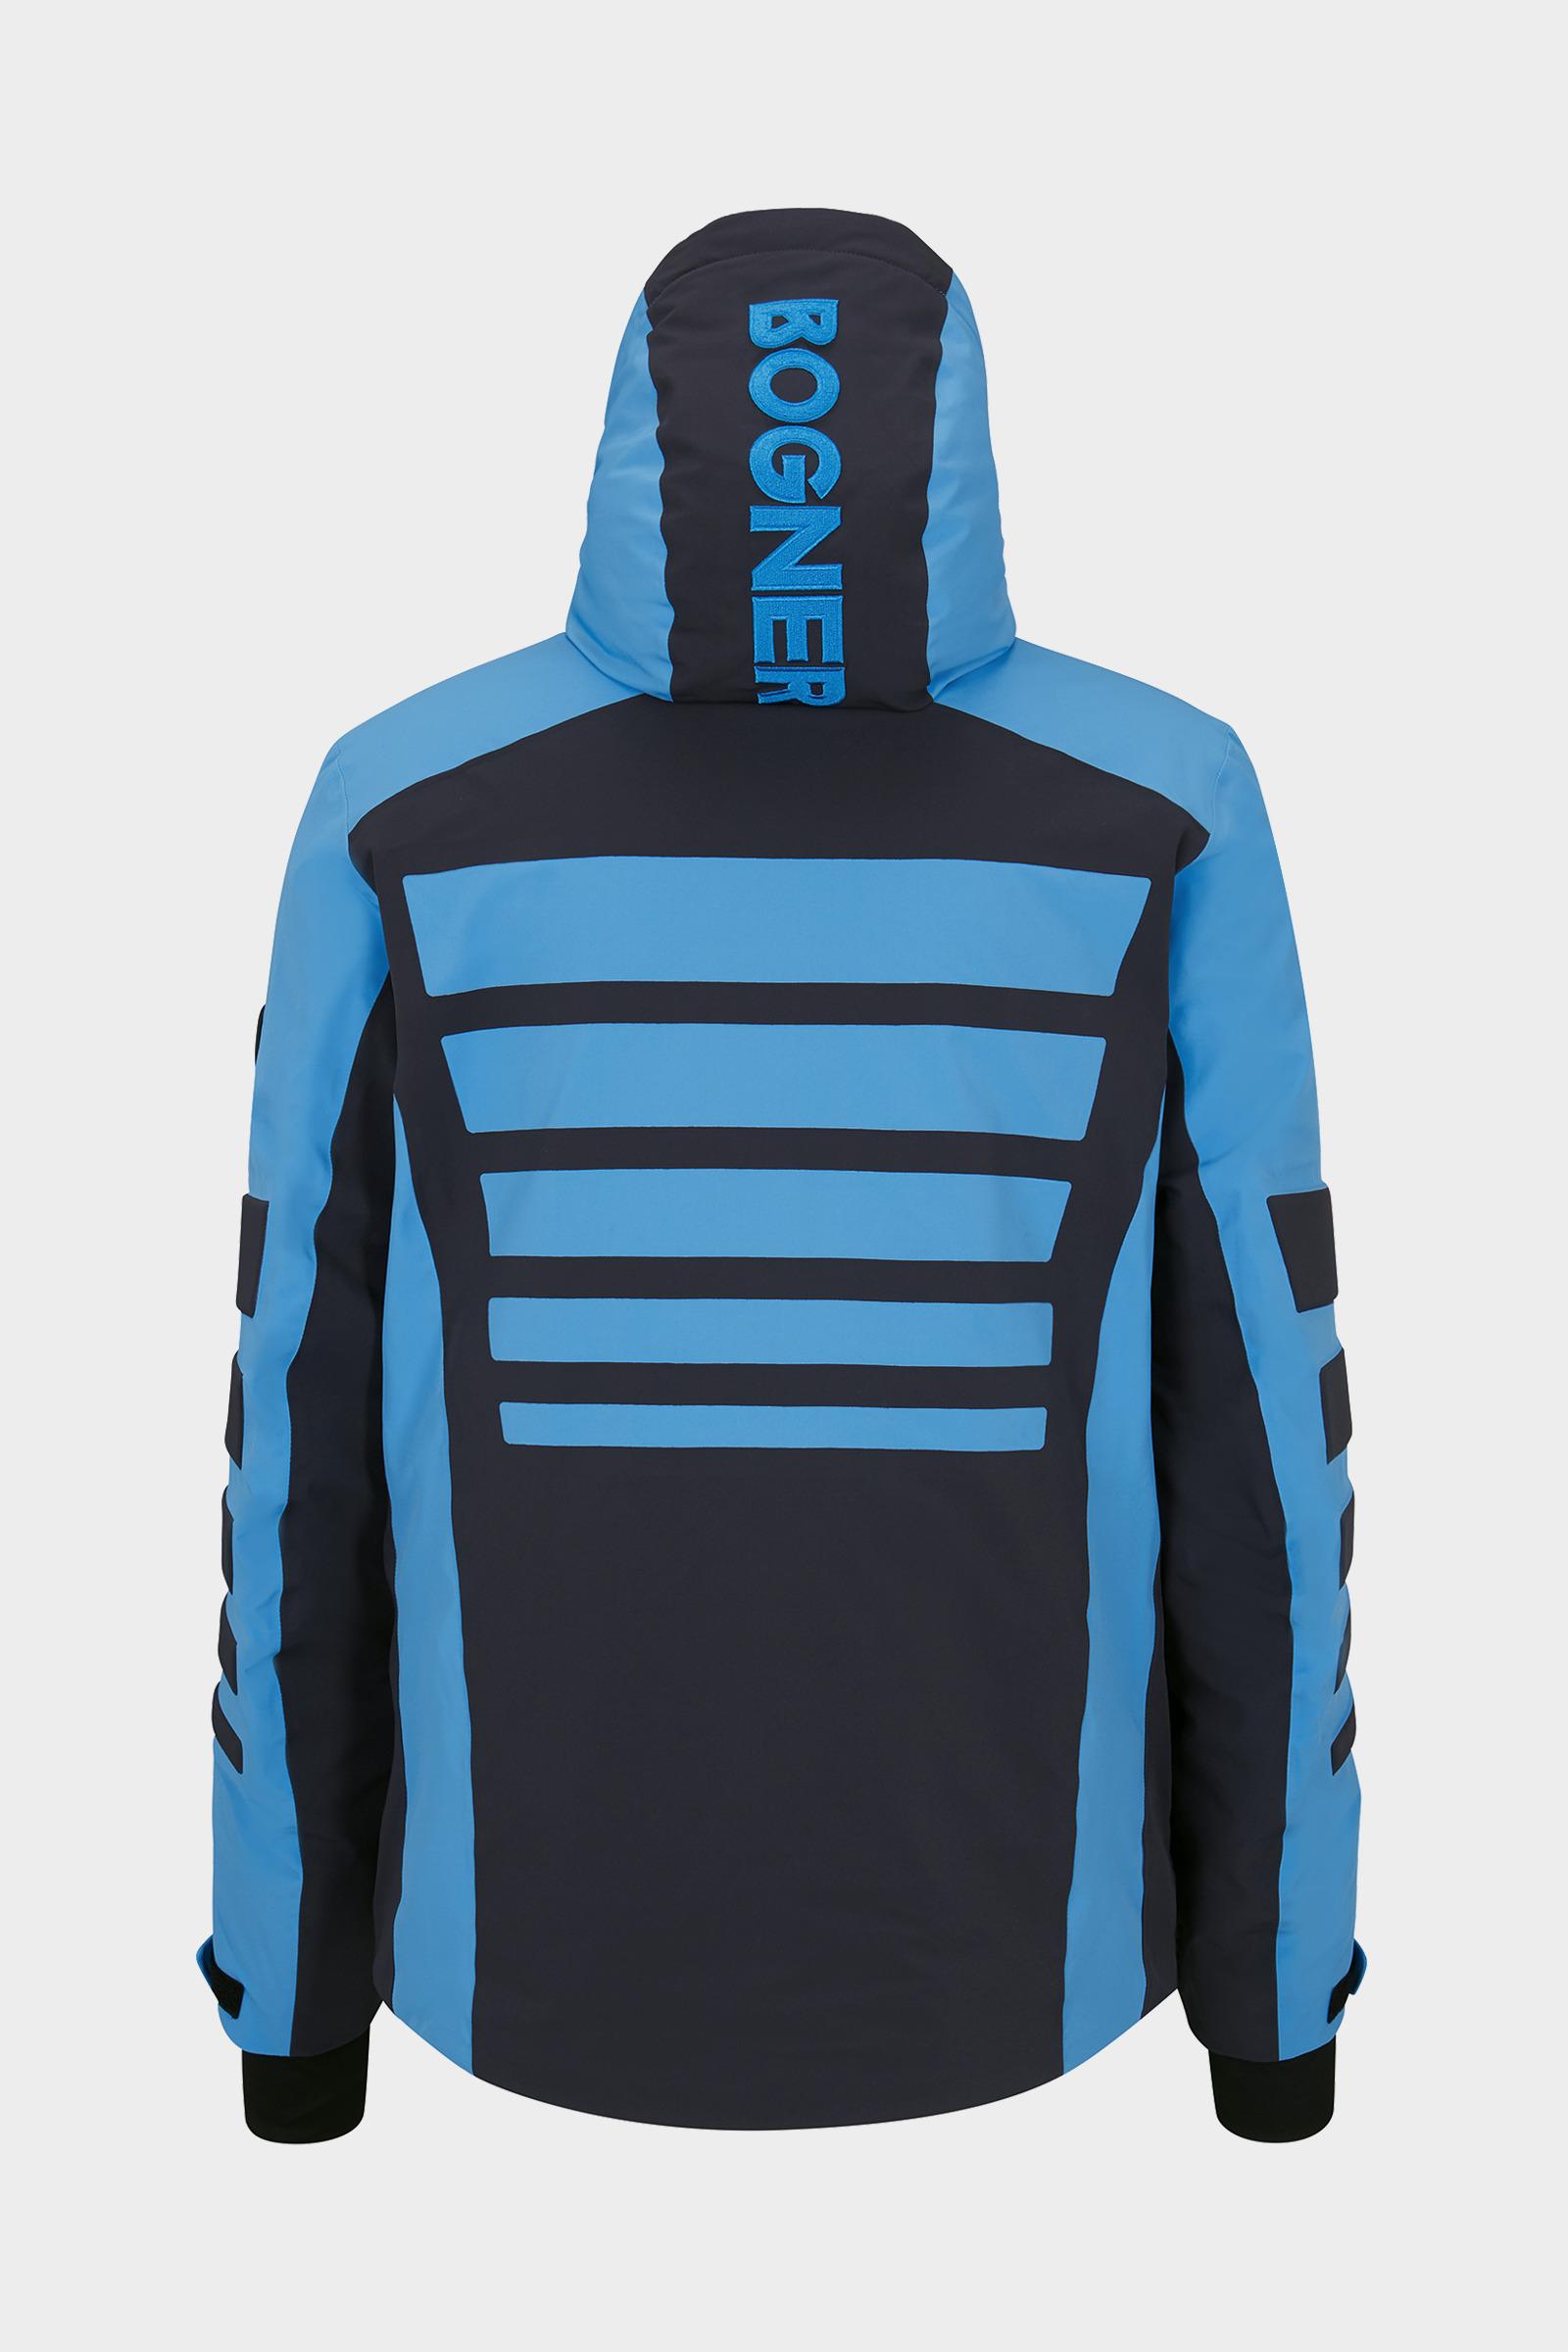 Bogner Buster Ski Jacket in Blue/Black (Blue) for Men - Lyst